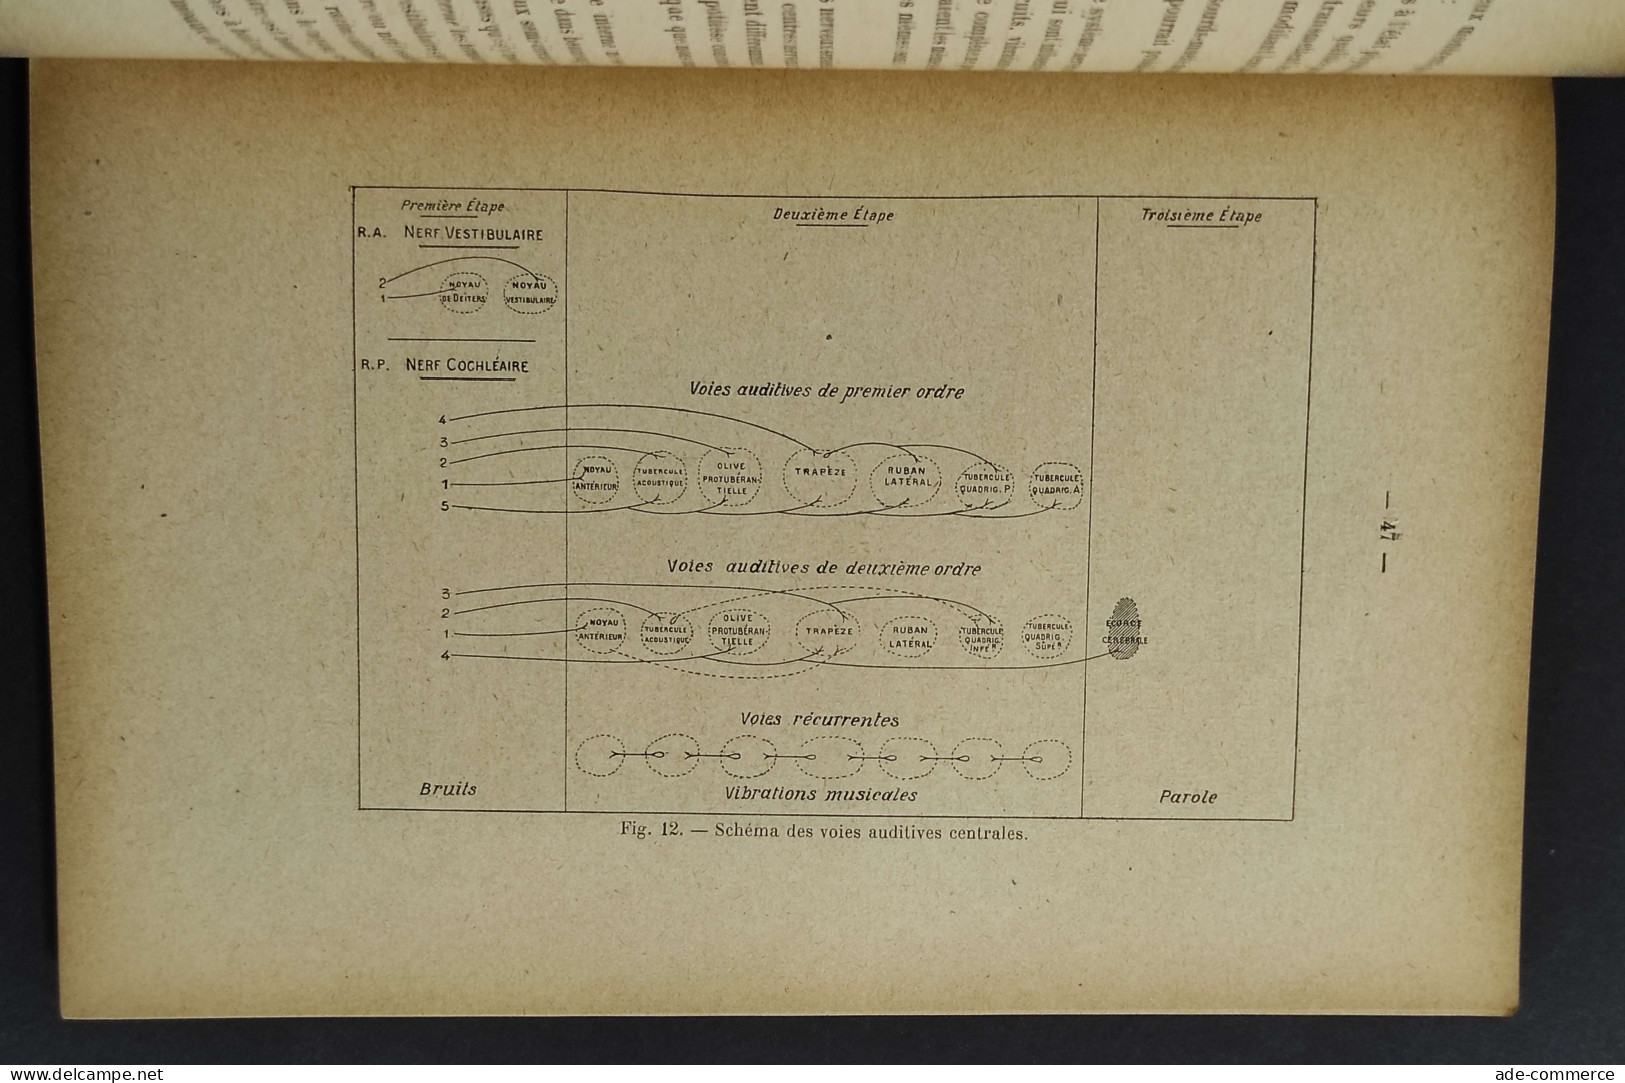 L'Audition Et Ses Variantions - Marage -Ed. Gauthier-Villars - 1923 - Mathématiques Et Physique